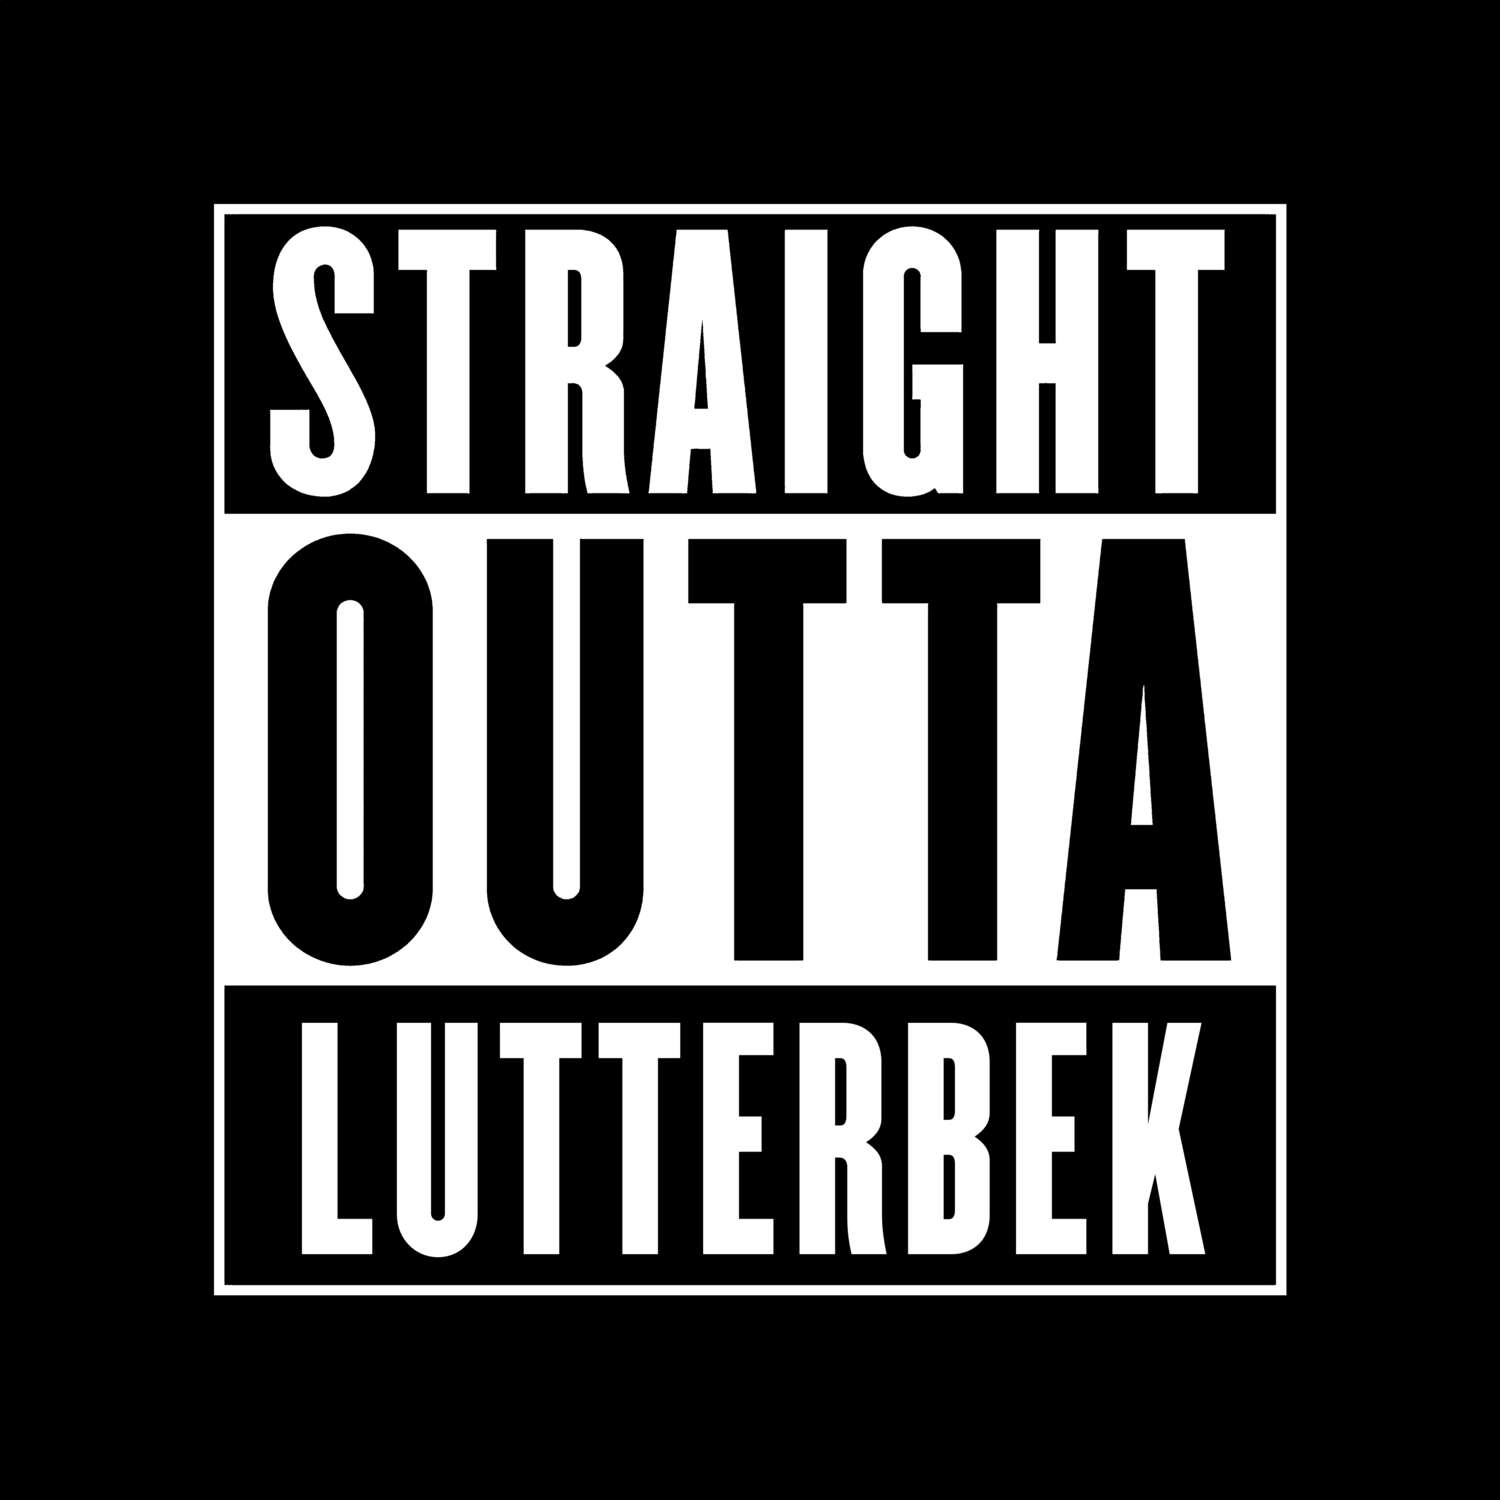 Lutterbek T-Shirt »Straight Outta«